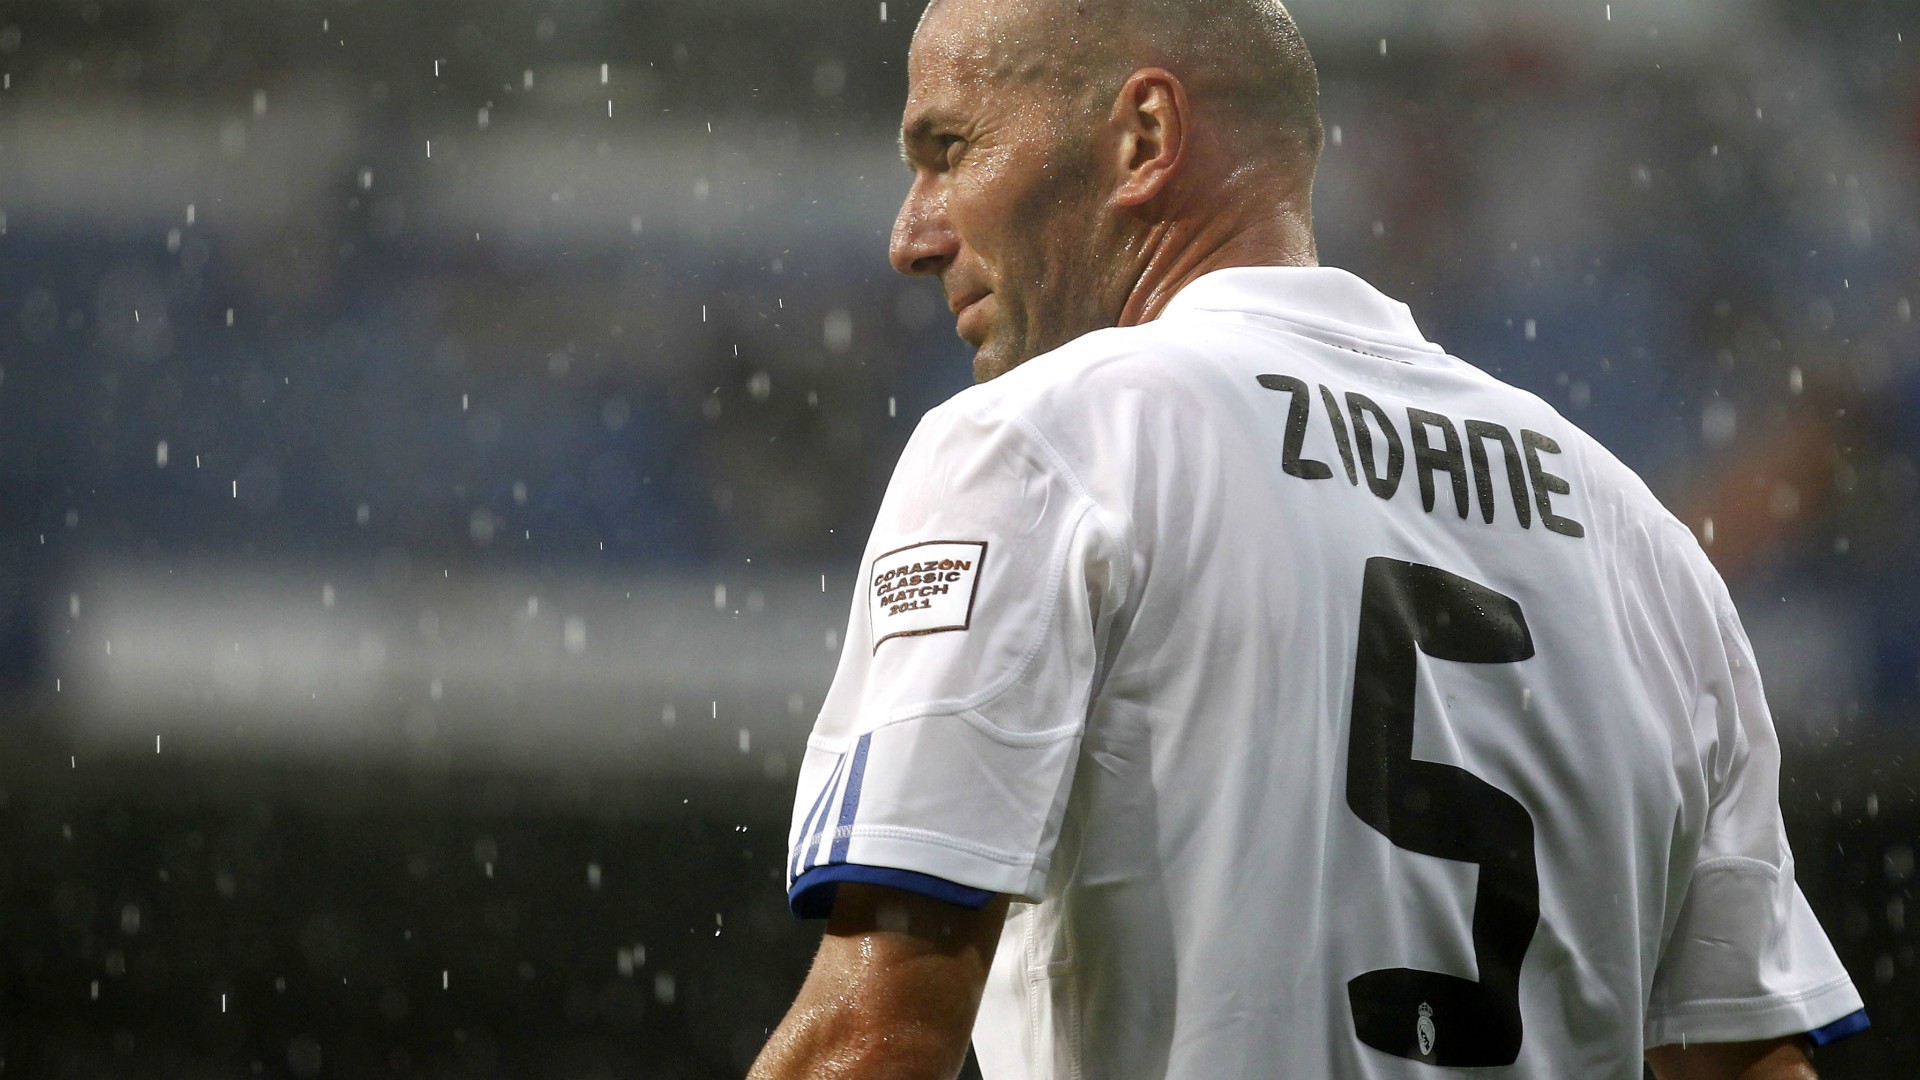 People 1920x1080 footballers soccer Zinedine Zidane Real Madrid French sports jerseys men sport